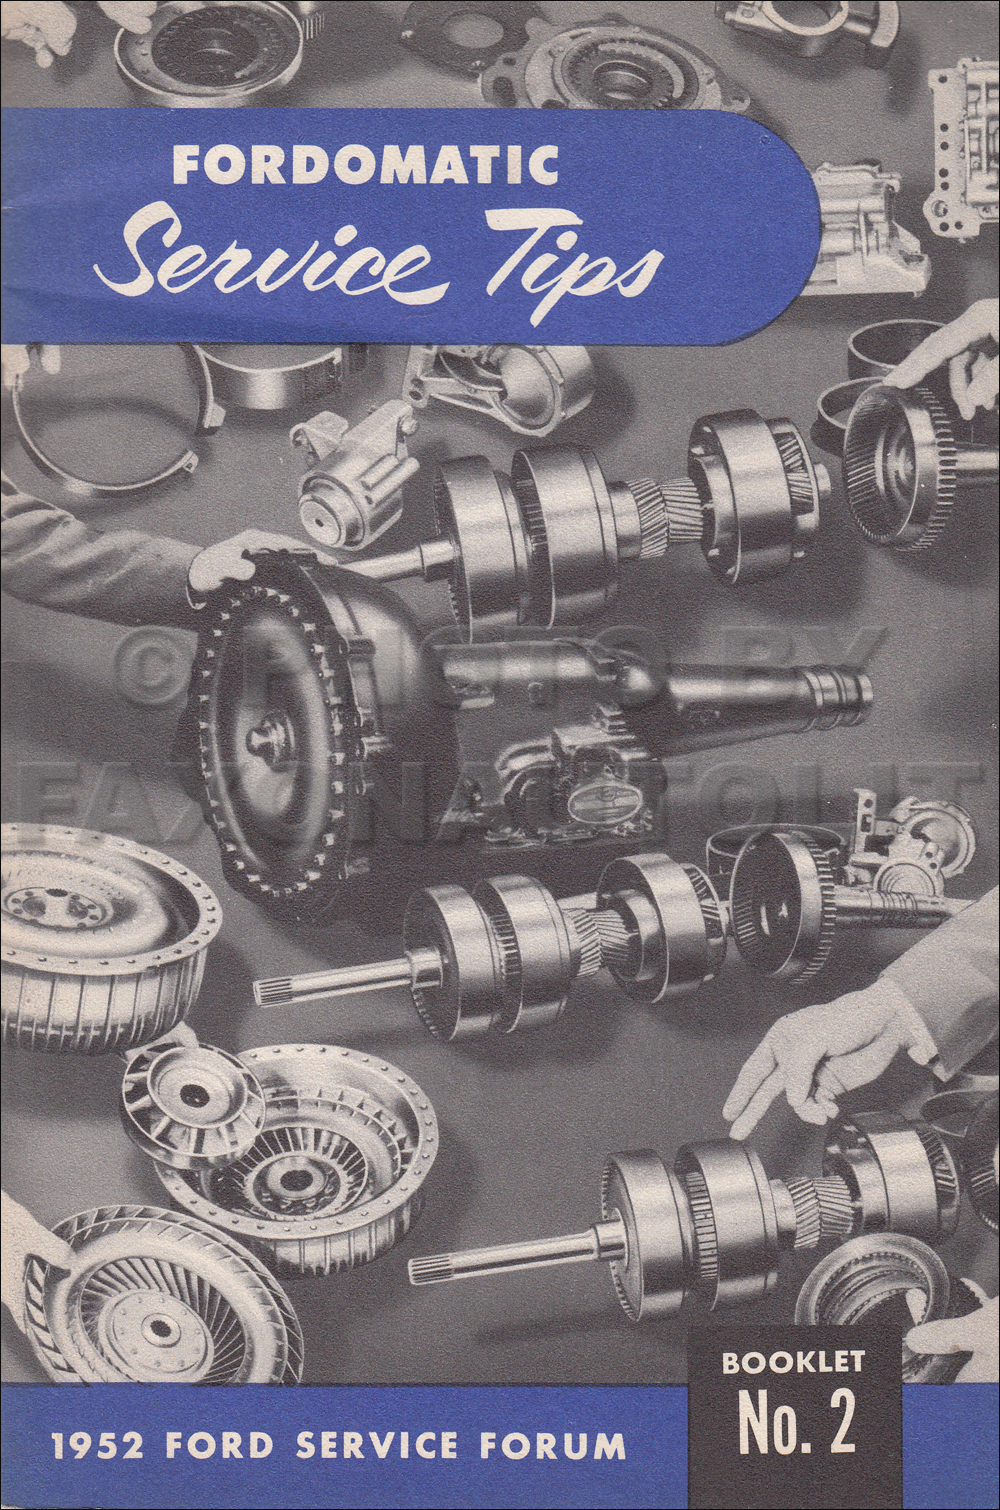 1951 Fordomatic Transmission Repair Manual Original